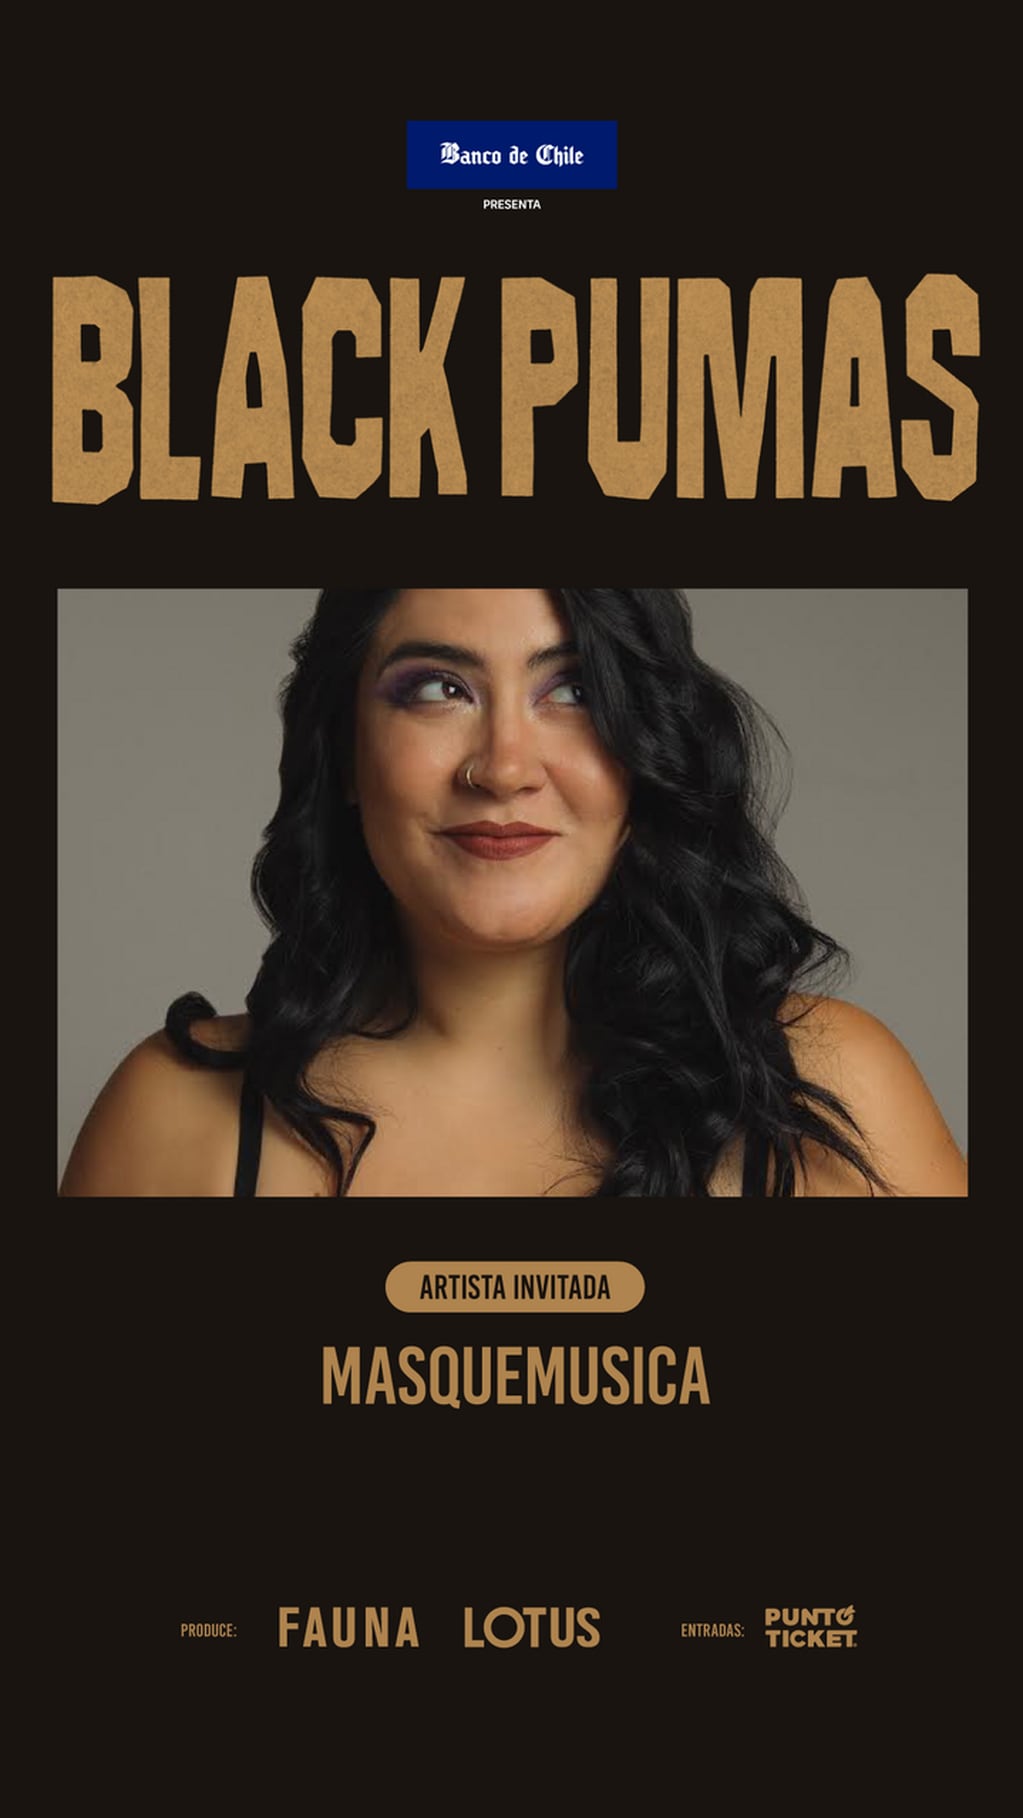 Masquemusica abrirá show de Black Pumas en Chile. Foto: Cedida.